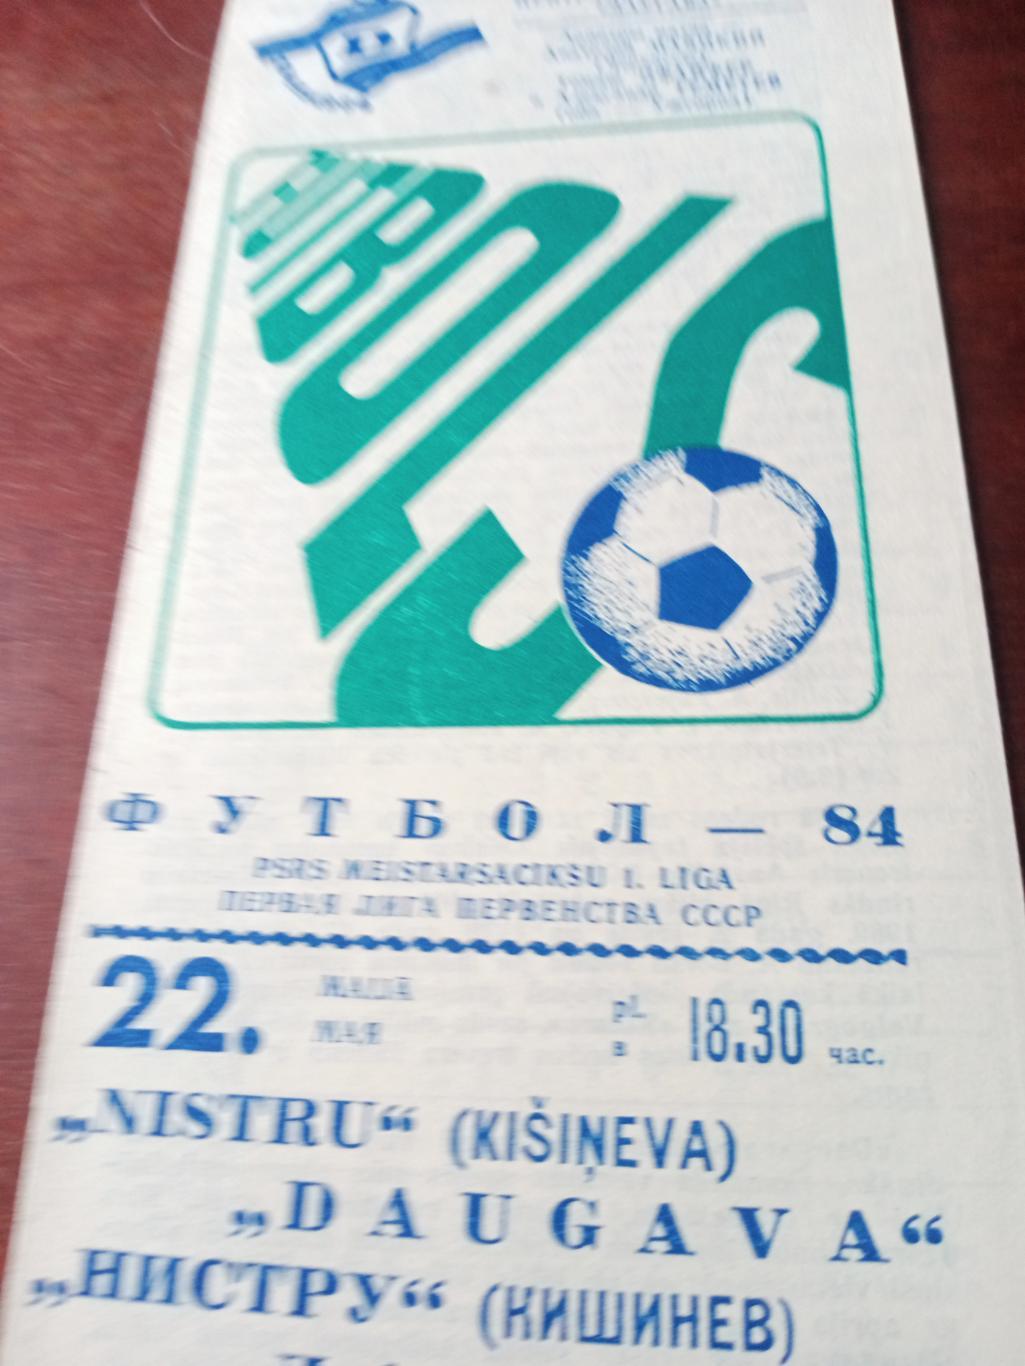 Даугава Рига - Нистру Кишинев. 22 мая 1984 год